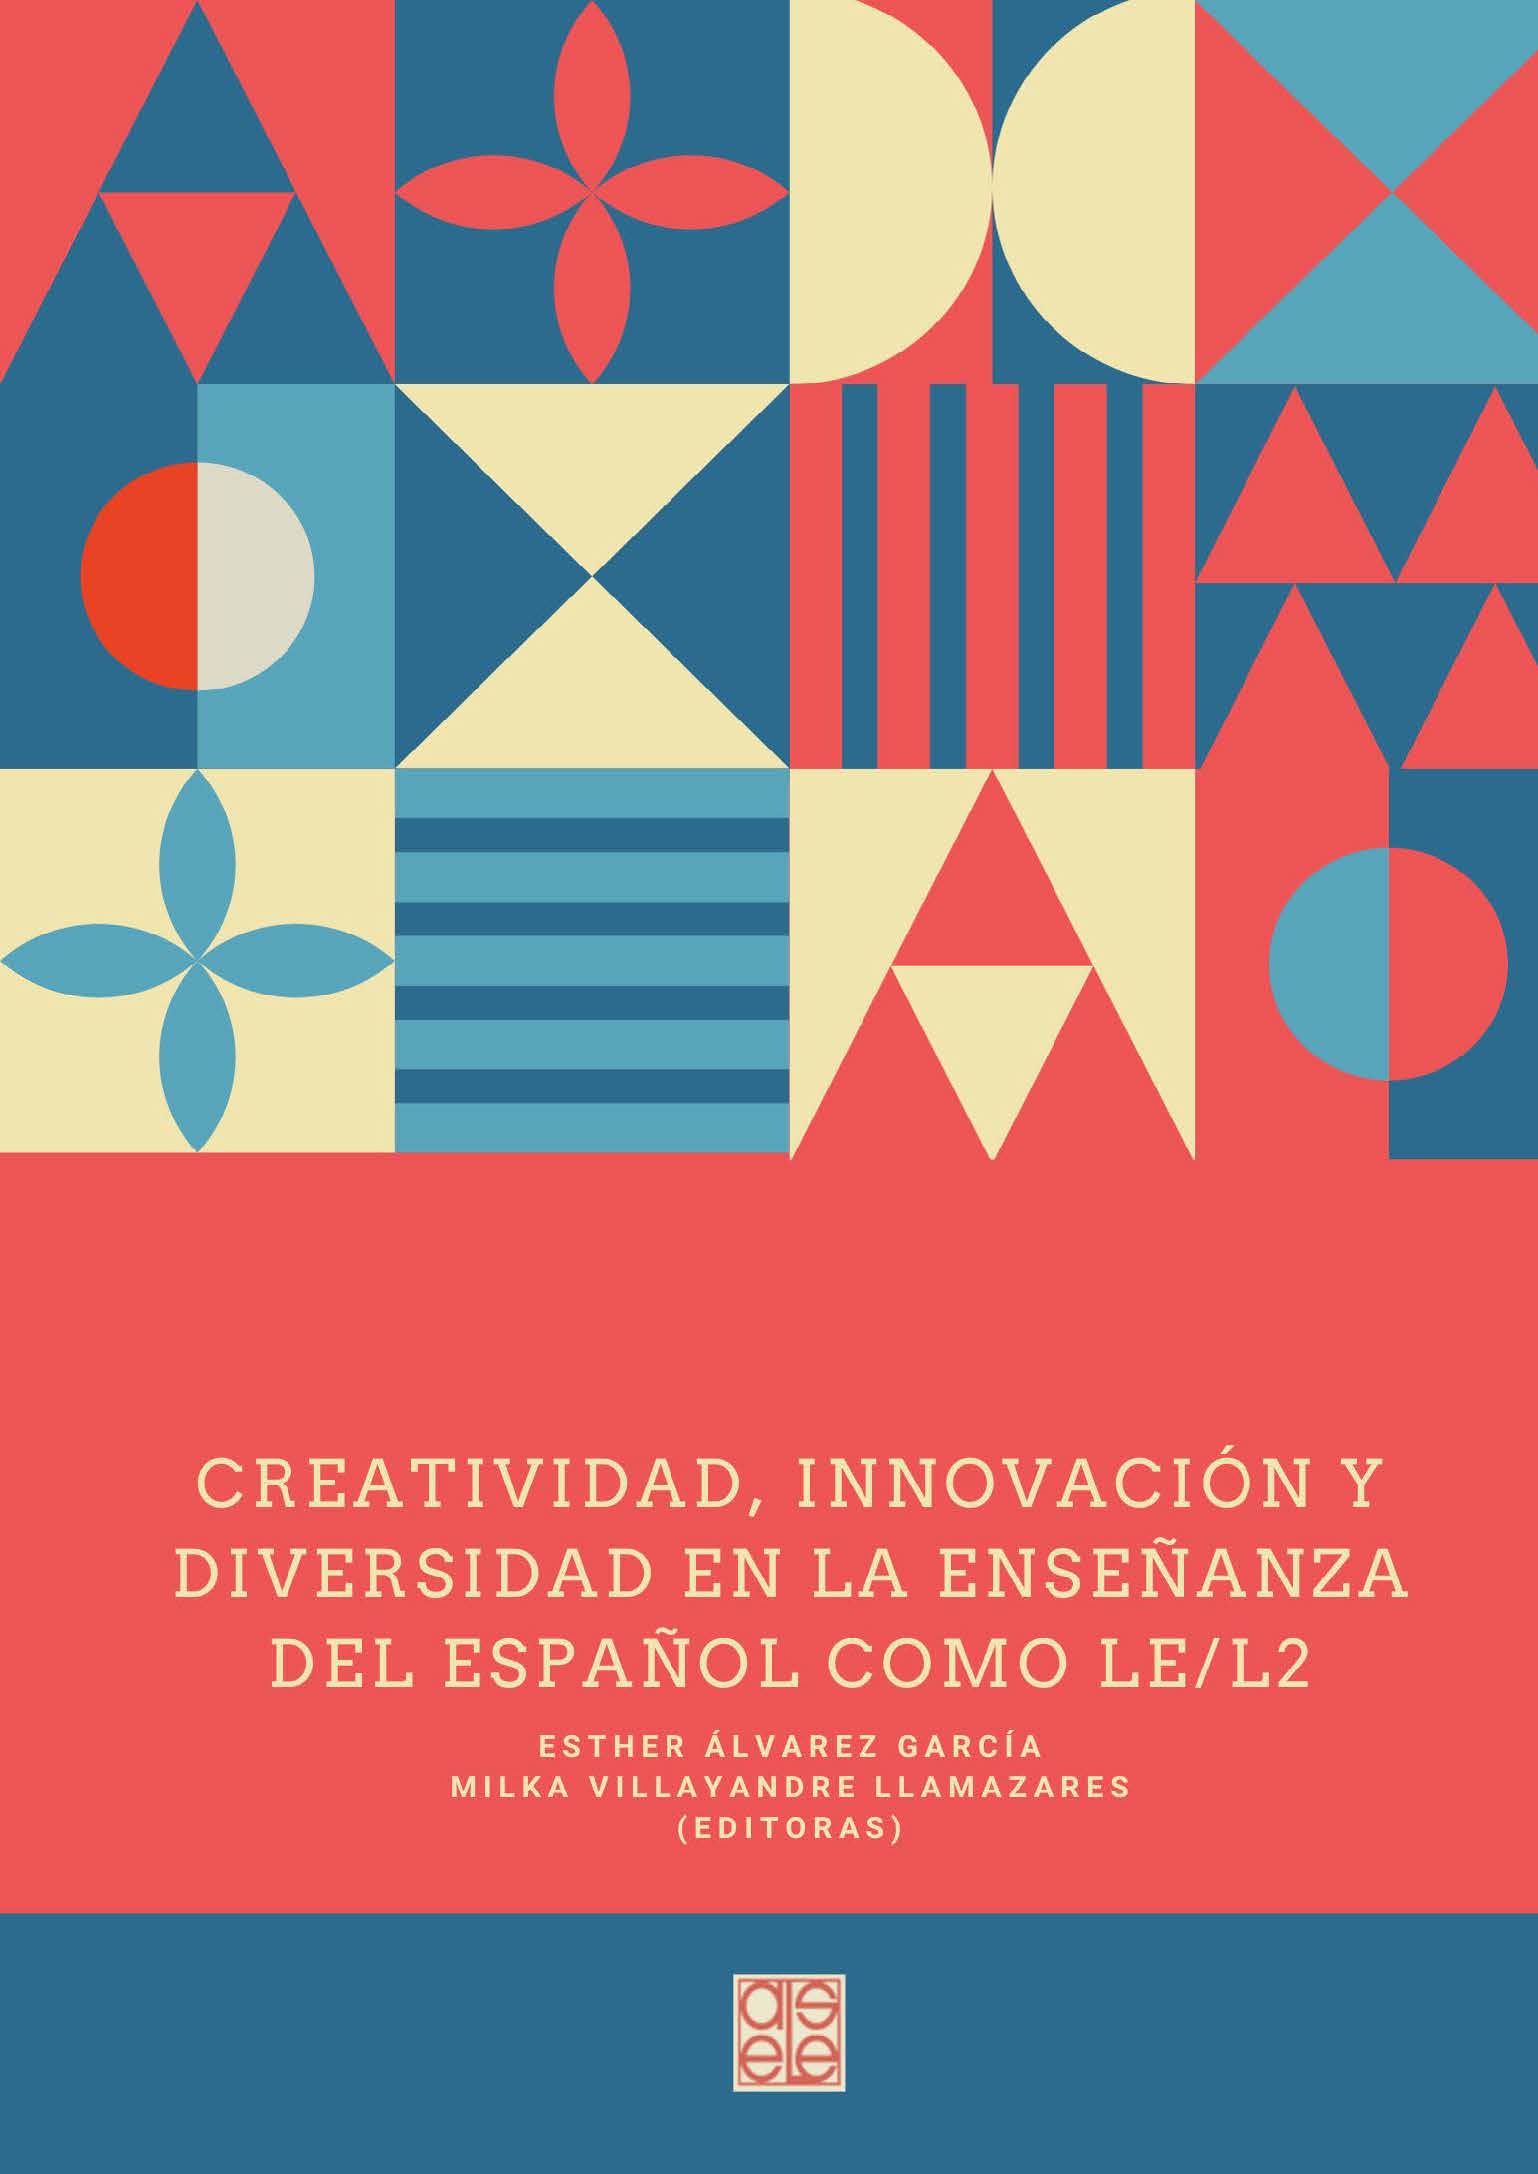 Imagen de portada del libro Creatividad, innovación y diversidad en la enseñanza del español como LE/L2